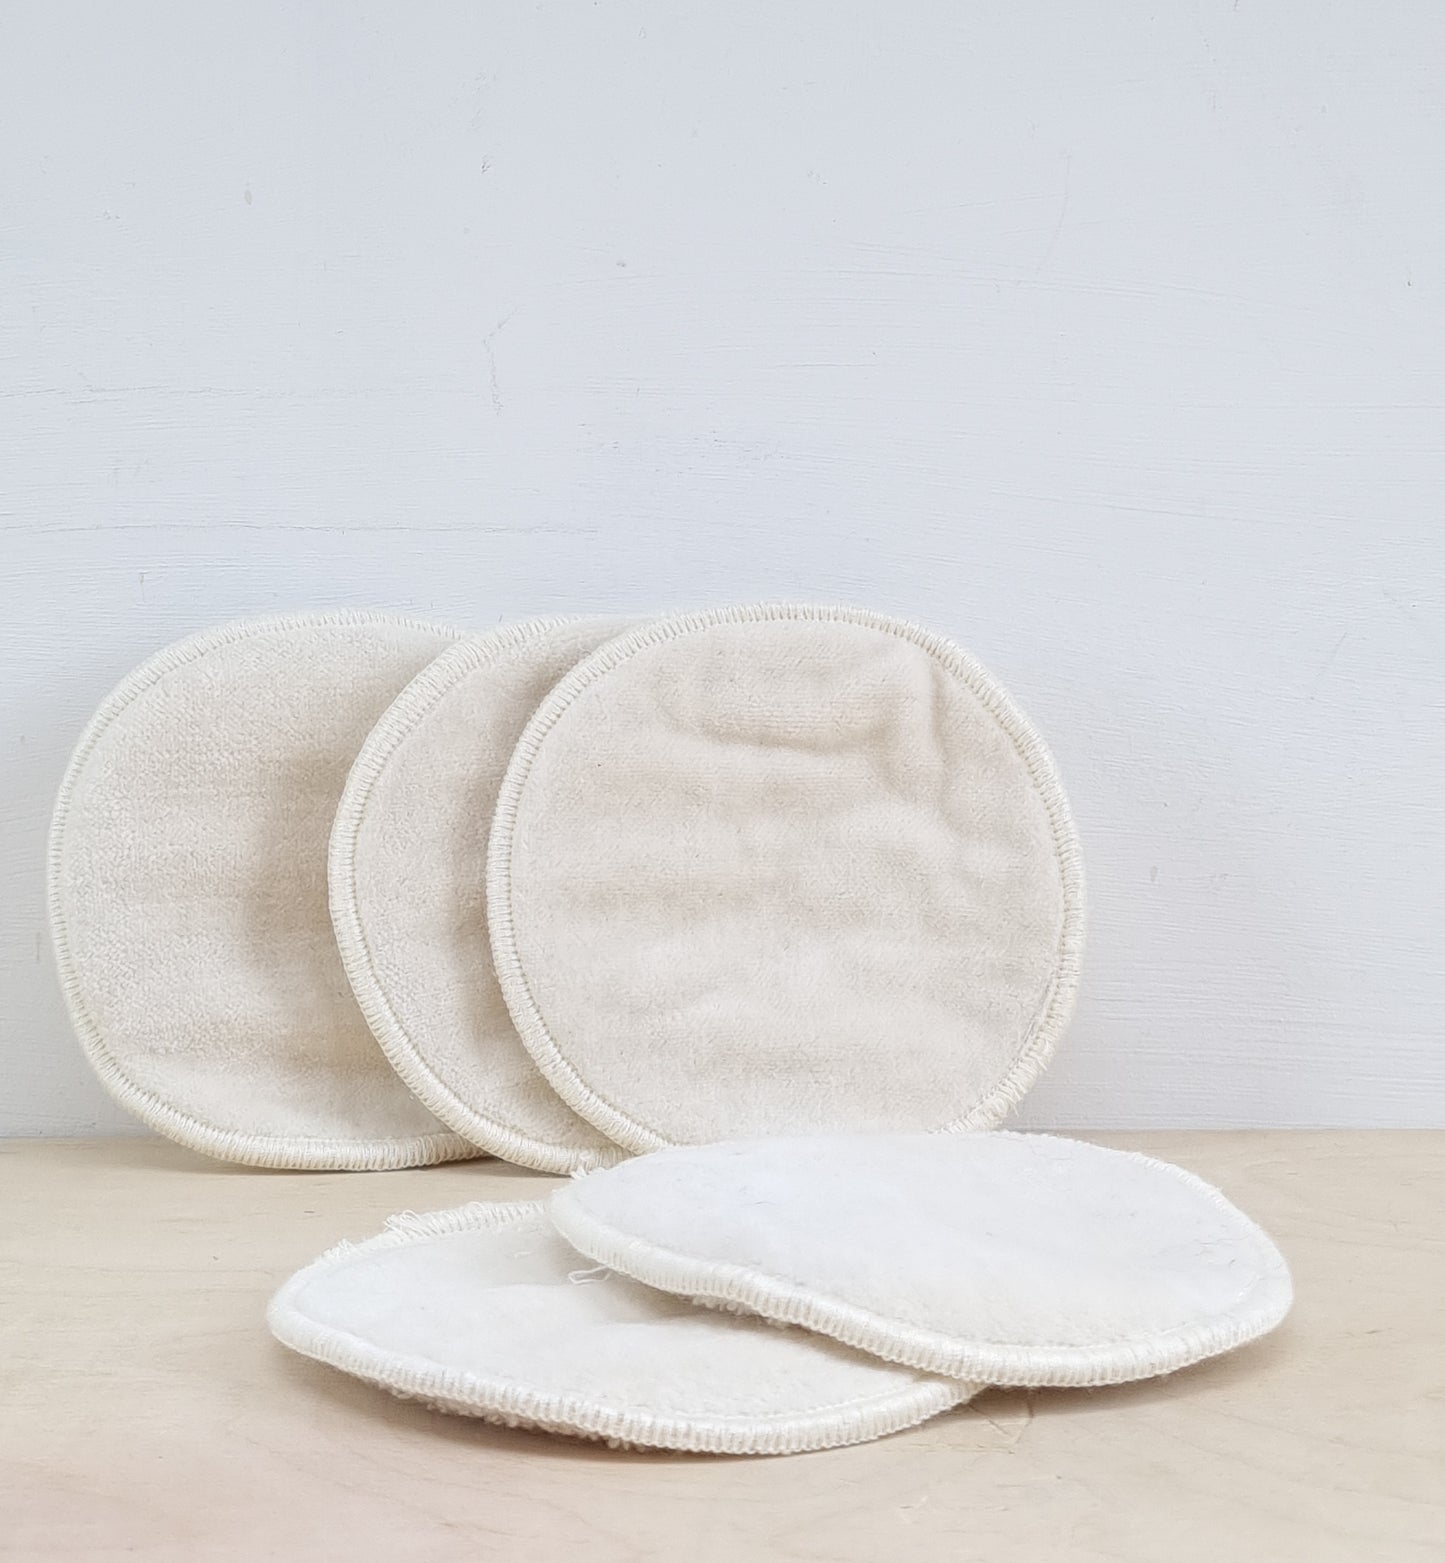 Organic cotton facial pads